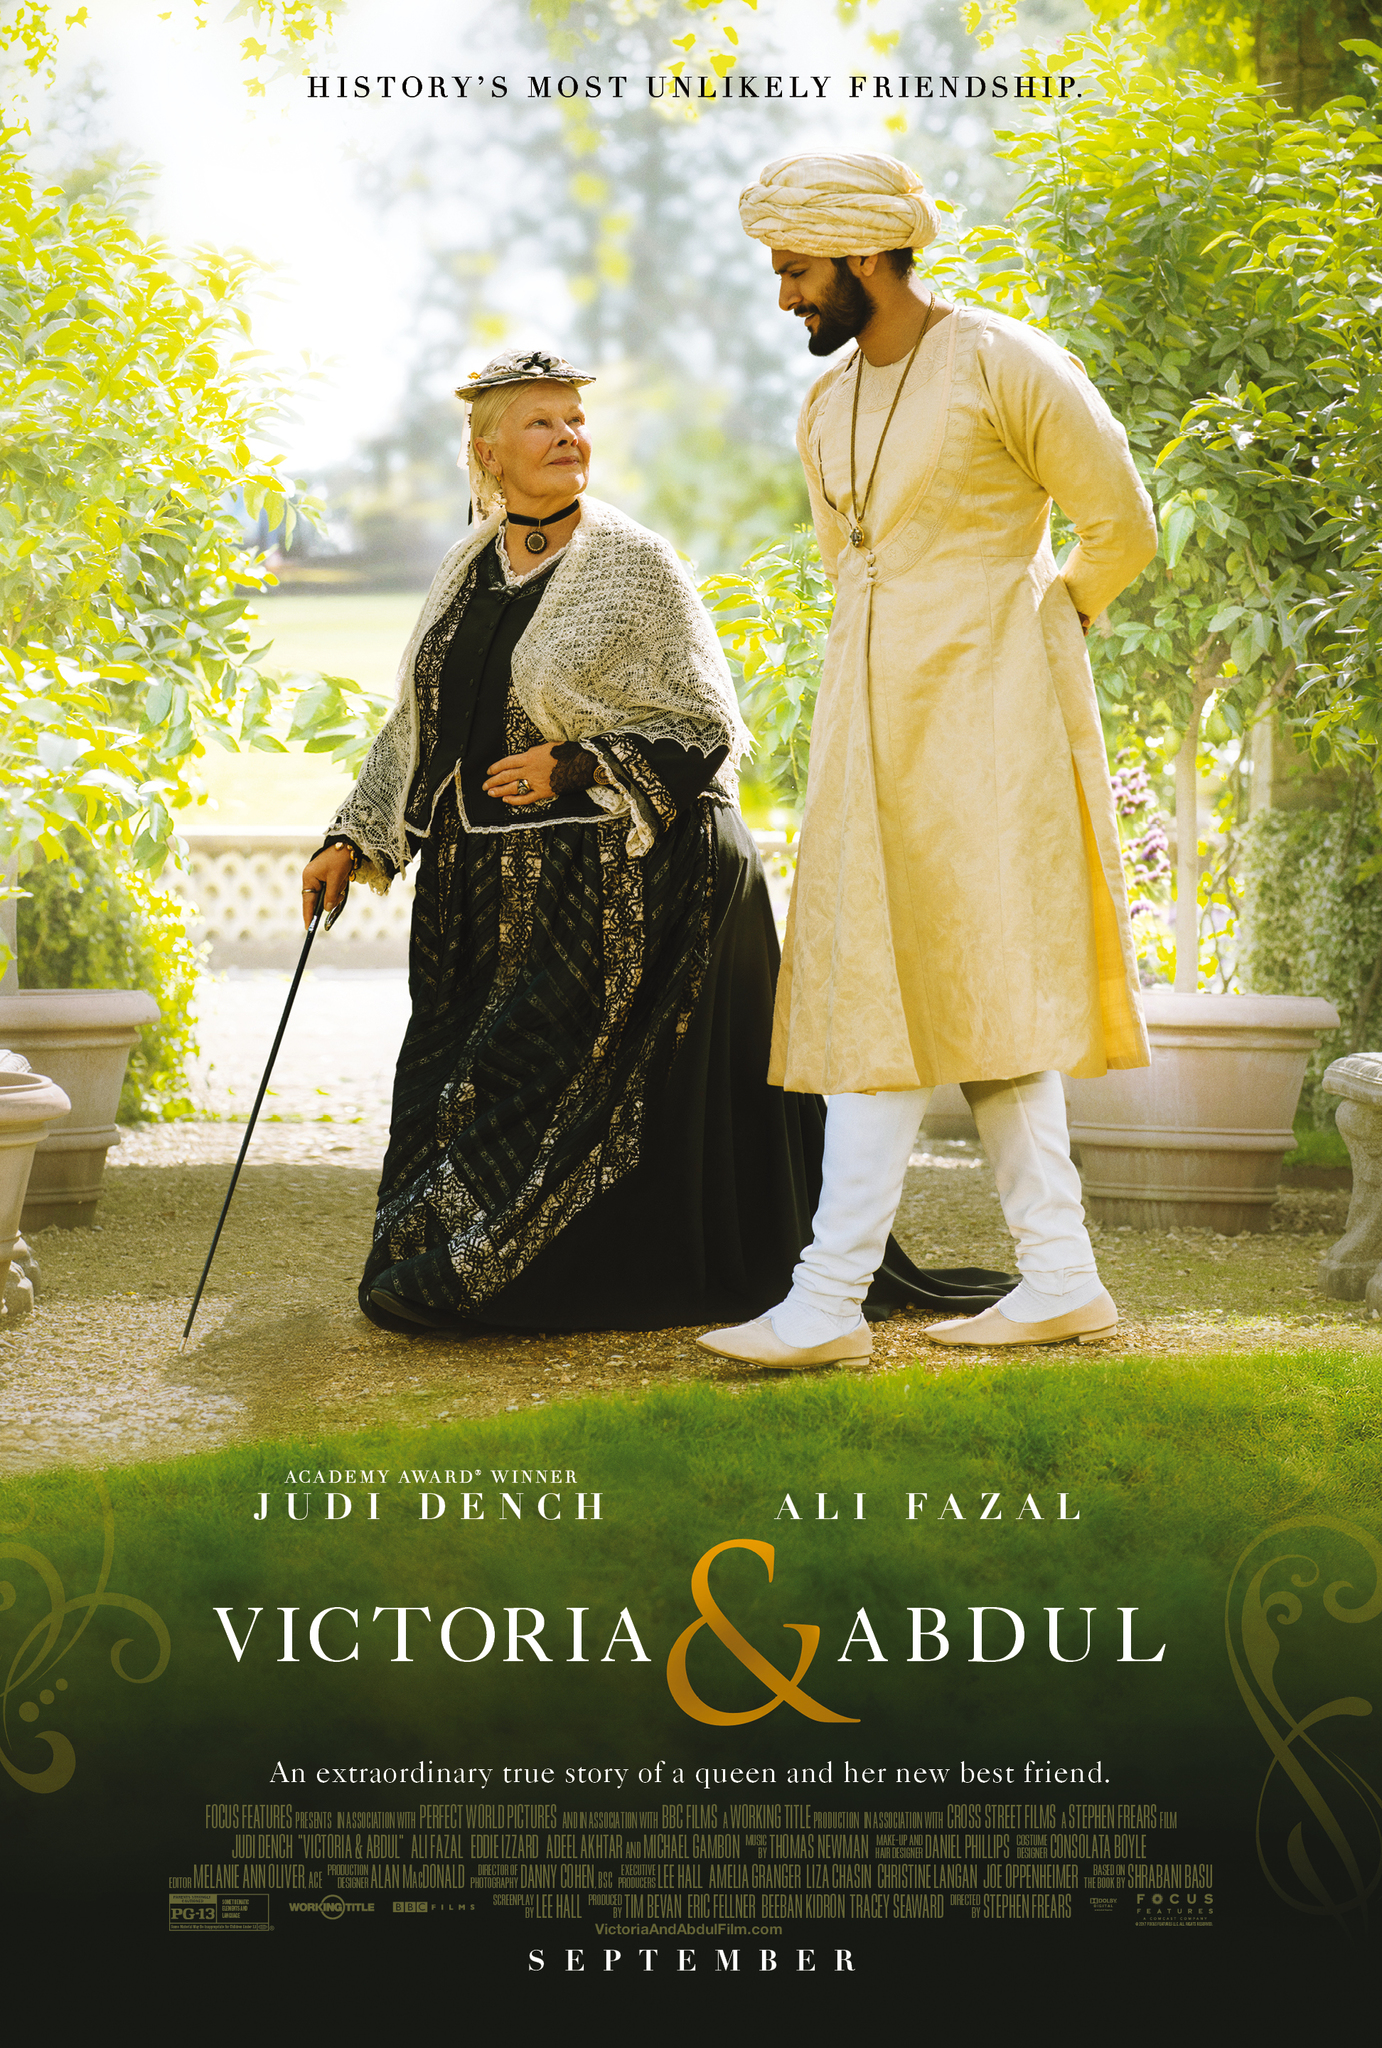 Nonton film Victoria and Abdul layarkaca21 indoxx1 ganool online streaming terbaru